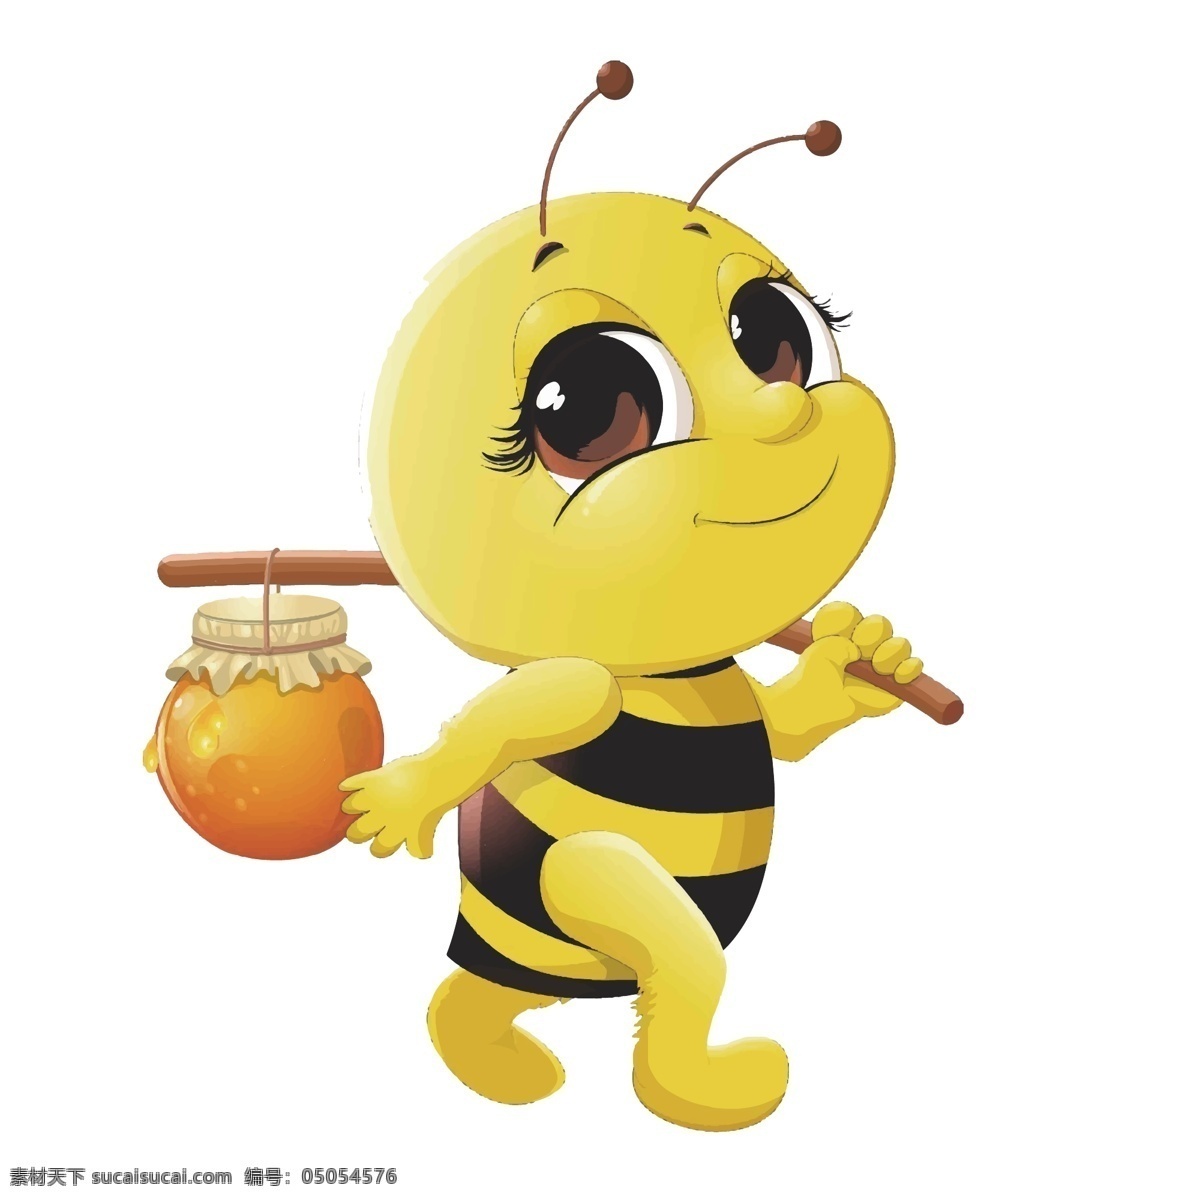 可爱蜜蜂 可爱 蜜蜂 黄色 采蜜 笑脸蜜蜂 采蜜蜜蜂 分层 背景素材